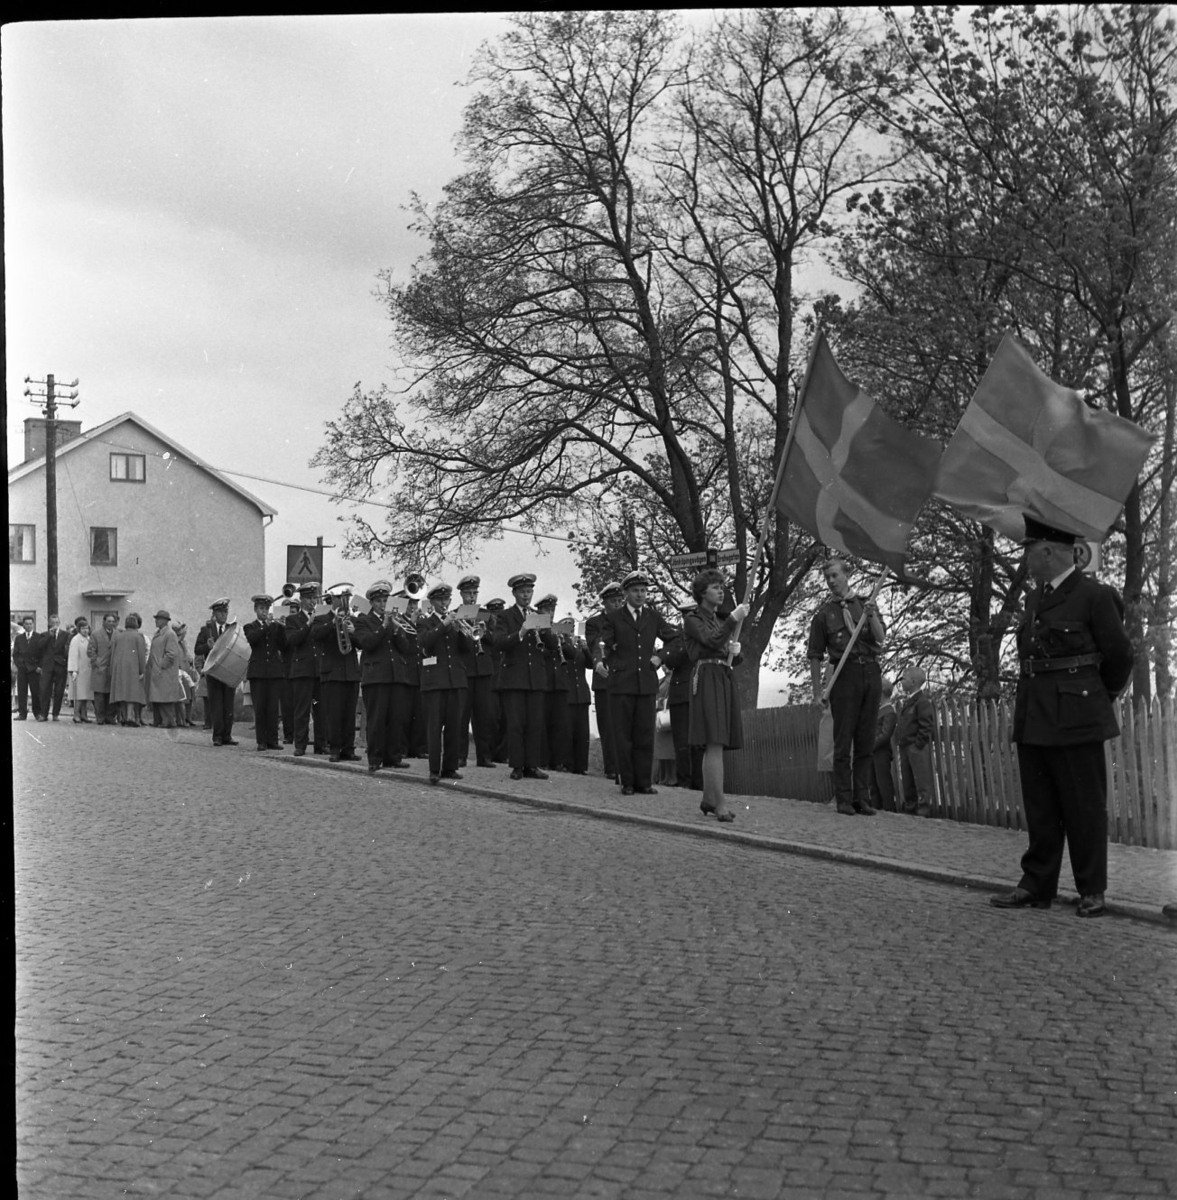 En musikkår med fanor i täten står uppställd vid Södra tullen i riktning mot staden. Polis Holger Isacsson står till höger. Fastigheten Jönköpingsvägen 2 syns i bakgrund, skyltar med "Rum" att hyra.